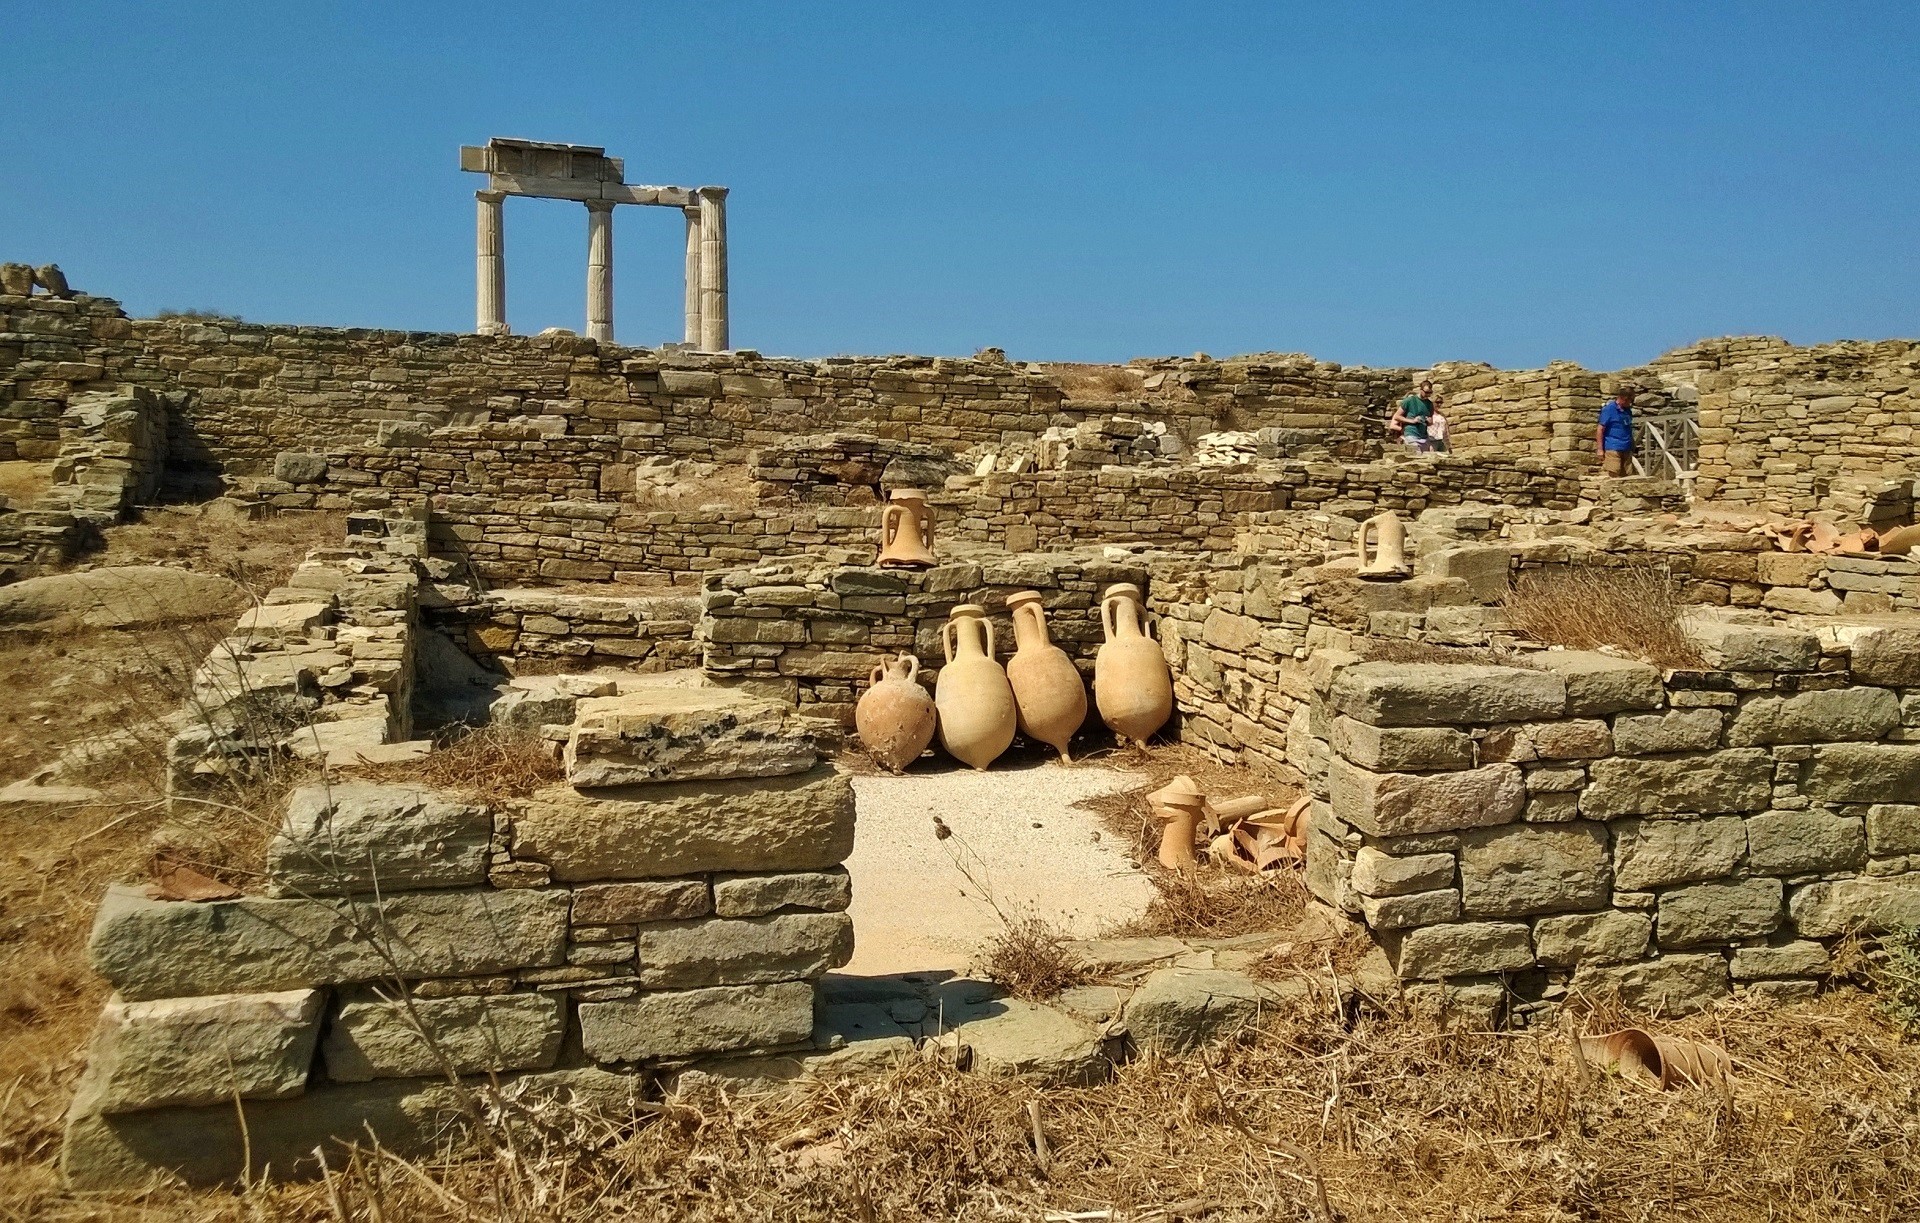 ruiny starożytnego miasta z murami, alejkami, glinianymi dzbanami